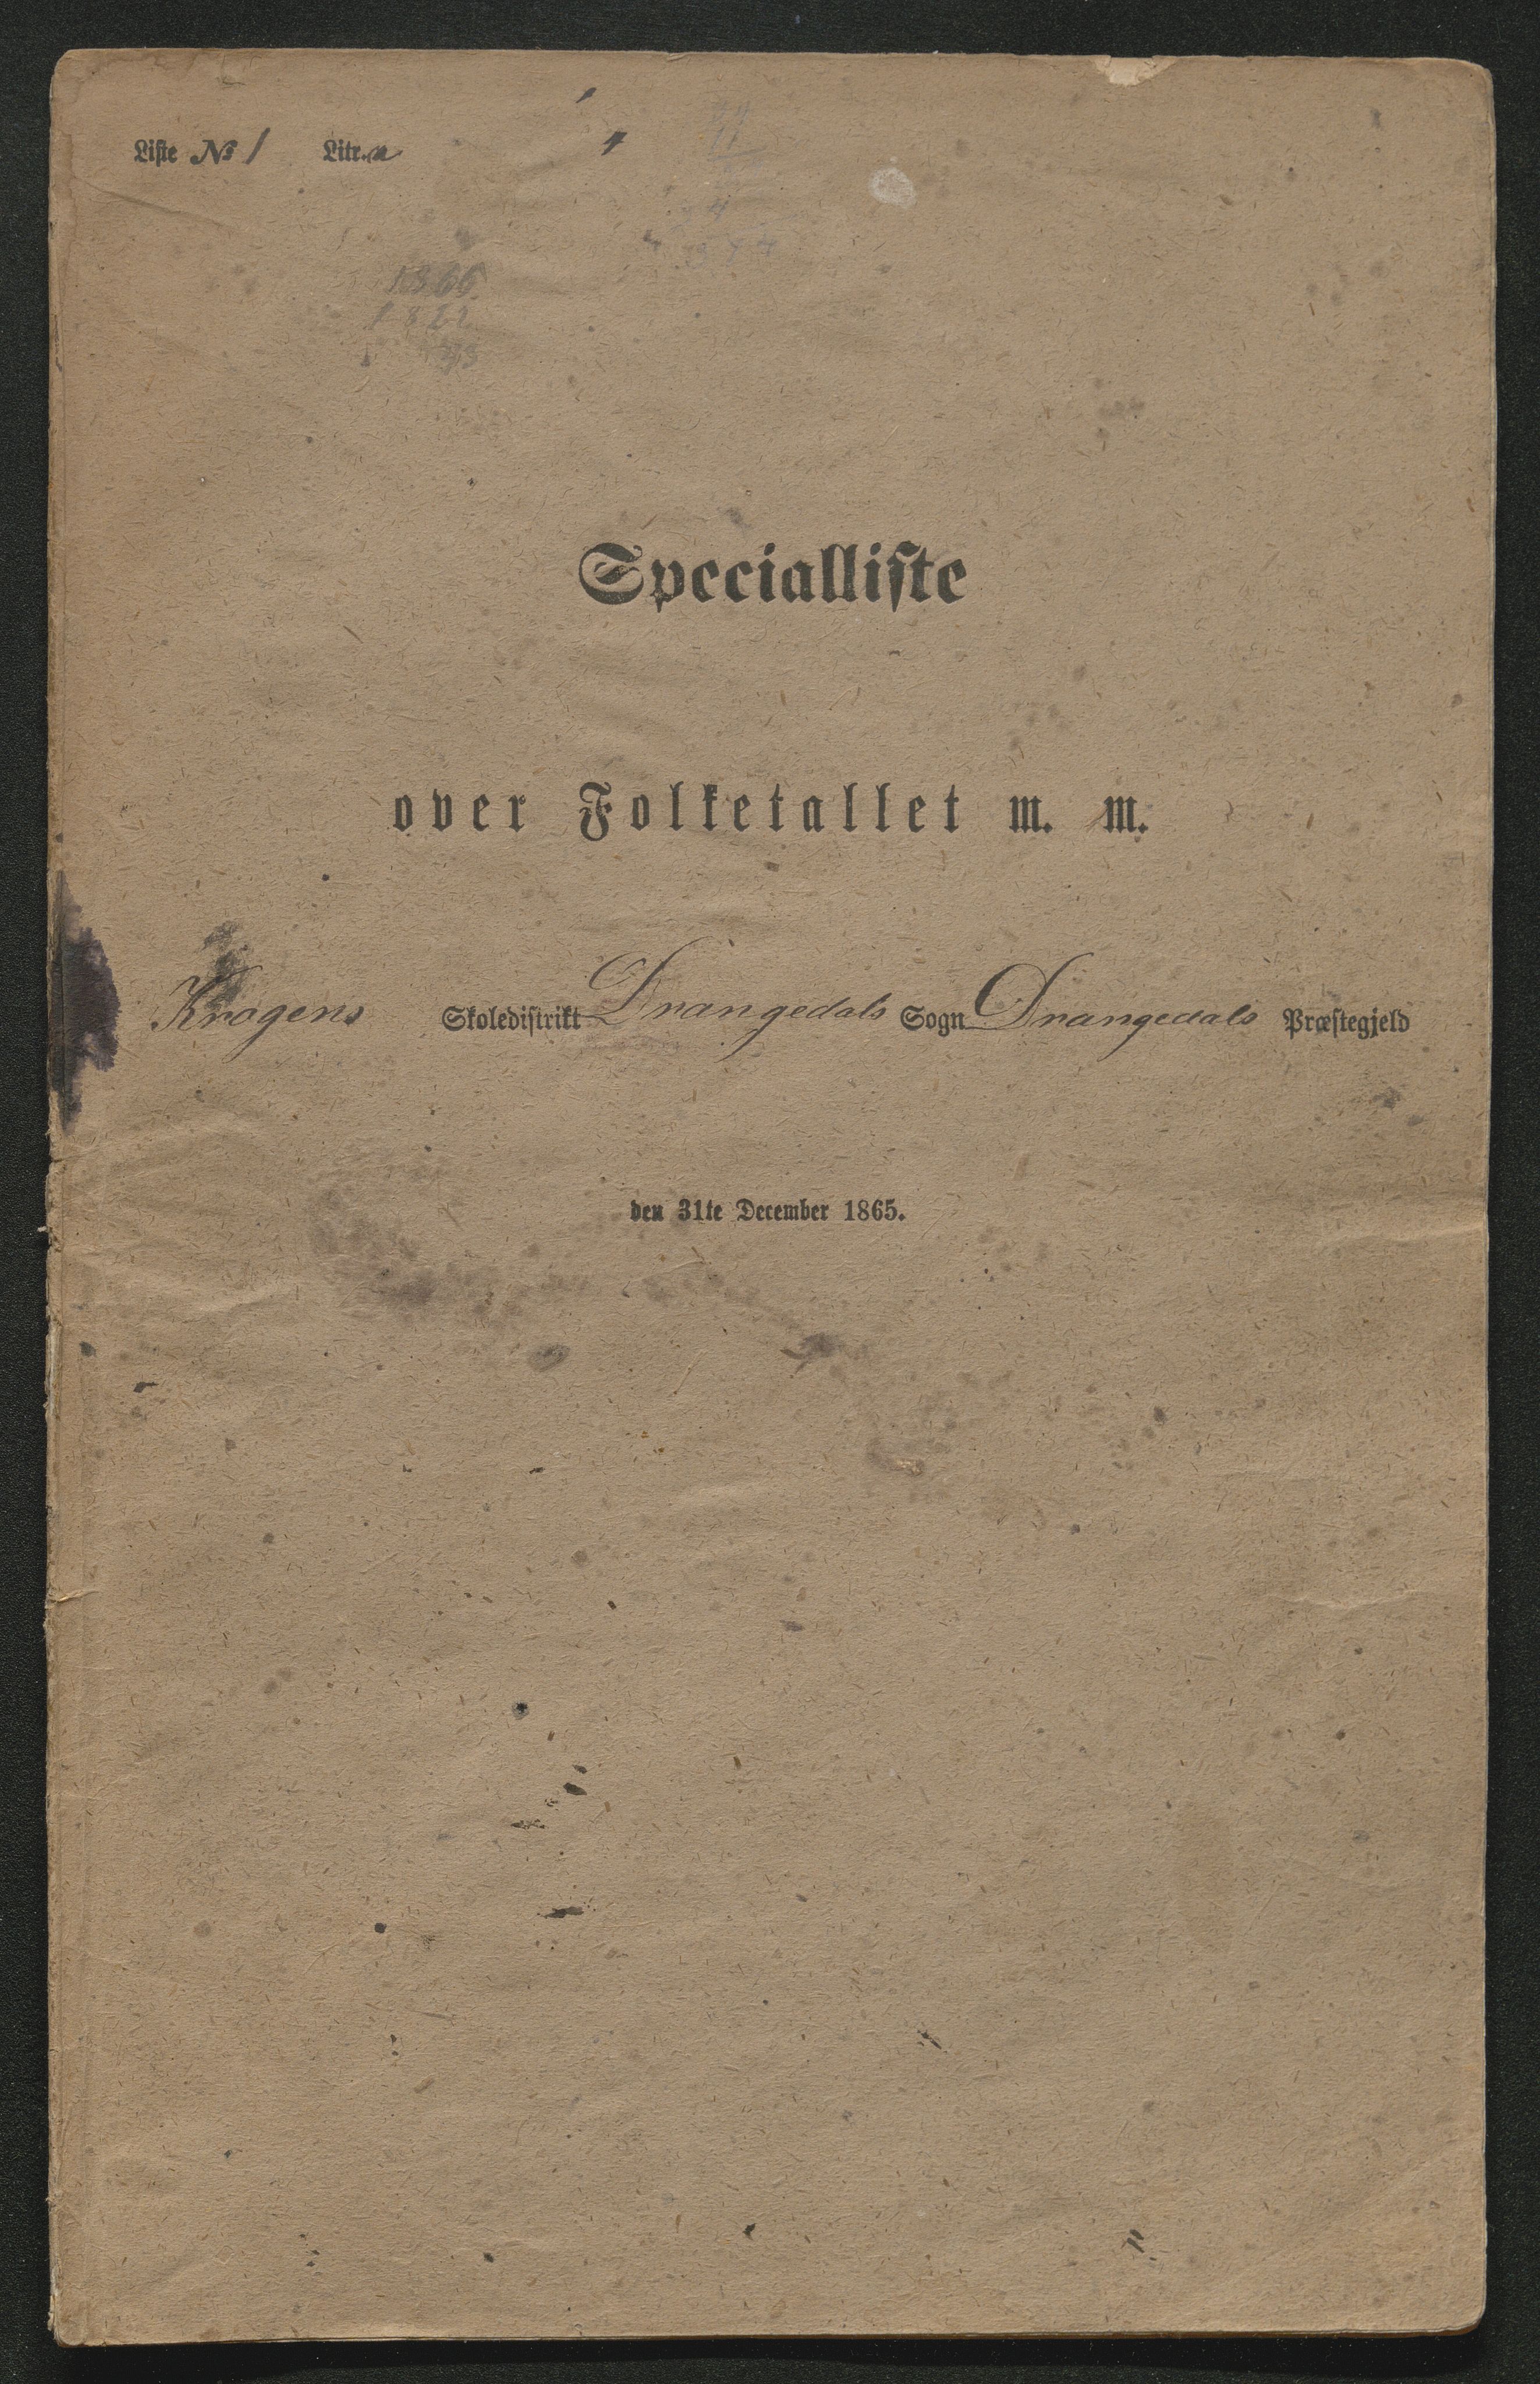 SAKO, Fantetellingen i Drangedal 1865, 1865, s. 25